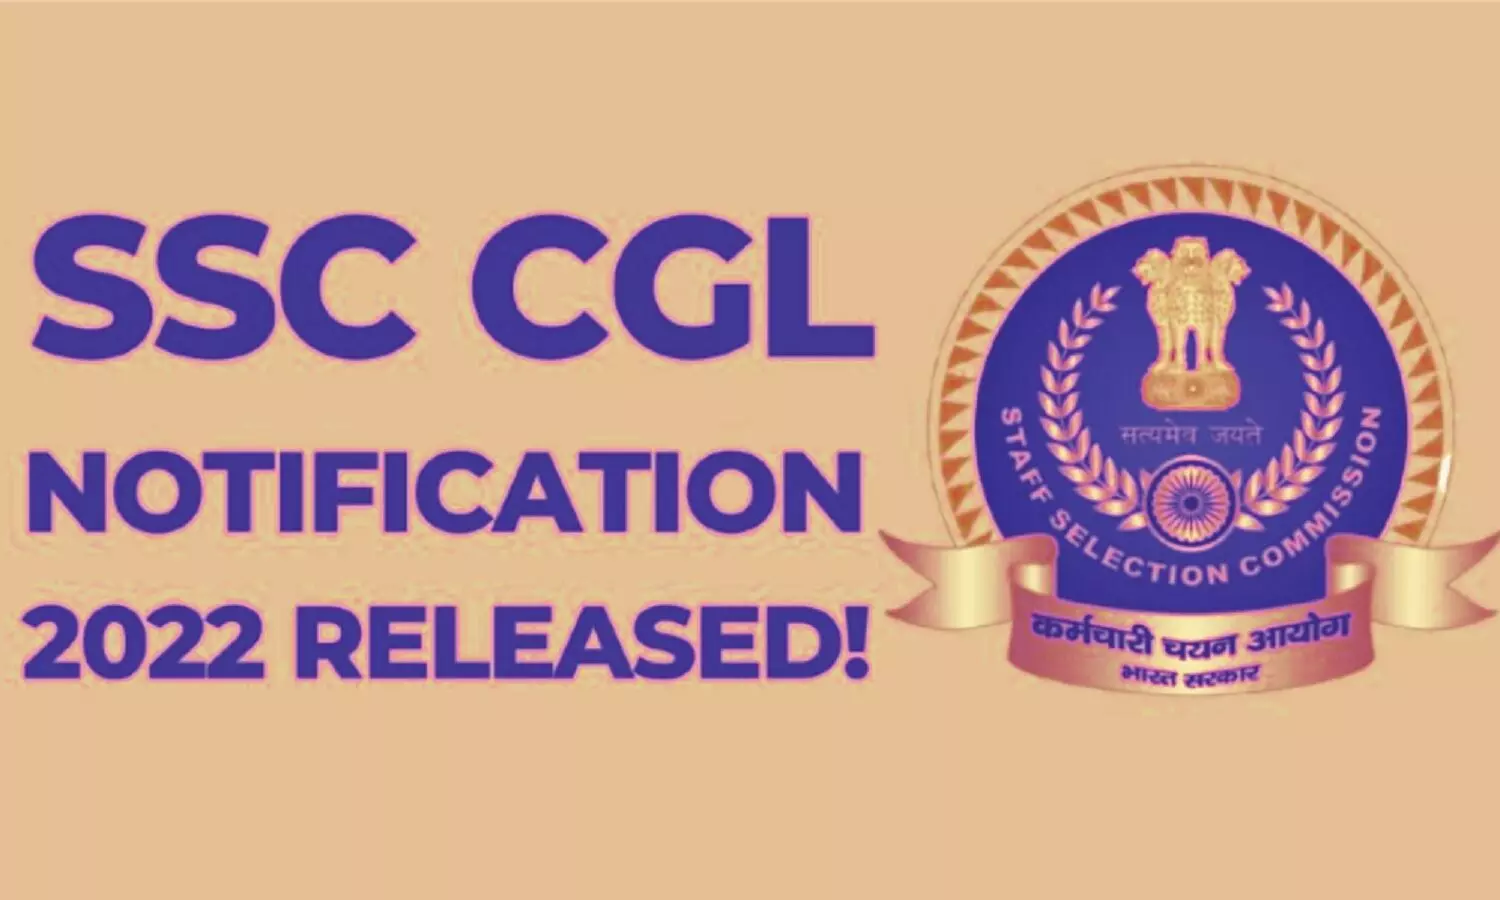 SSC CGL 2022 Notification: एसएससी सीजीएल 2022 का भर्ती नोटिफिकेशन जारी, दें परीक्षा और बन जाएं सरकारी अधिकारी